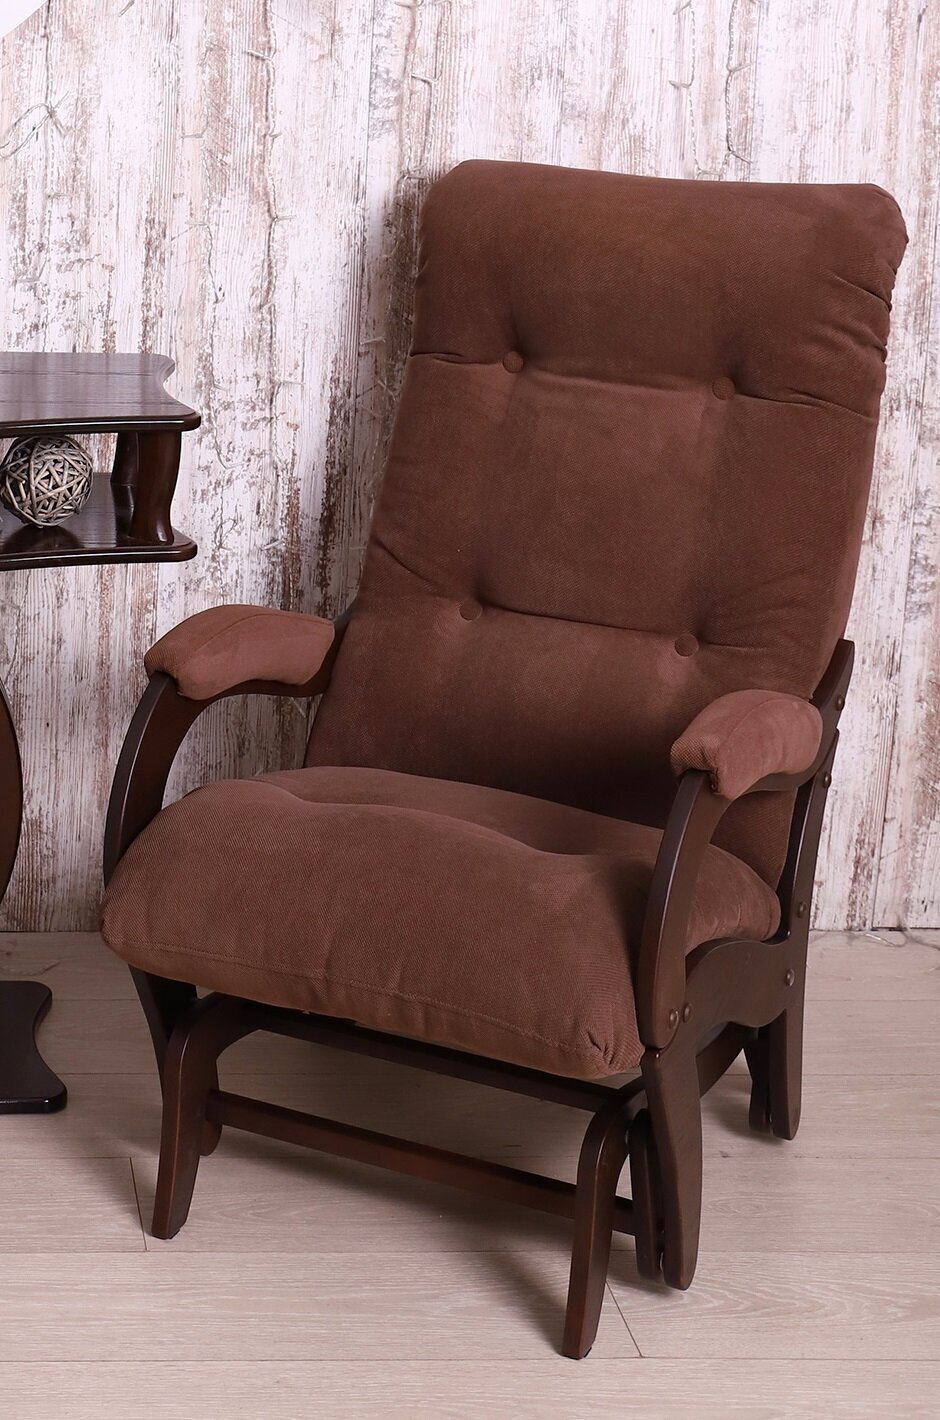 Кресло-качалка маятник Консул люкс, цвет коричневый, ДеСтейл